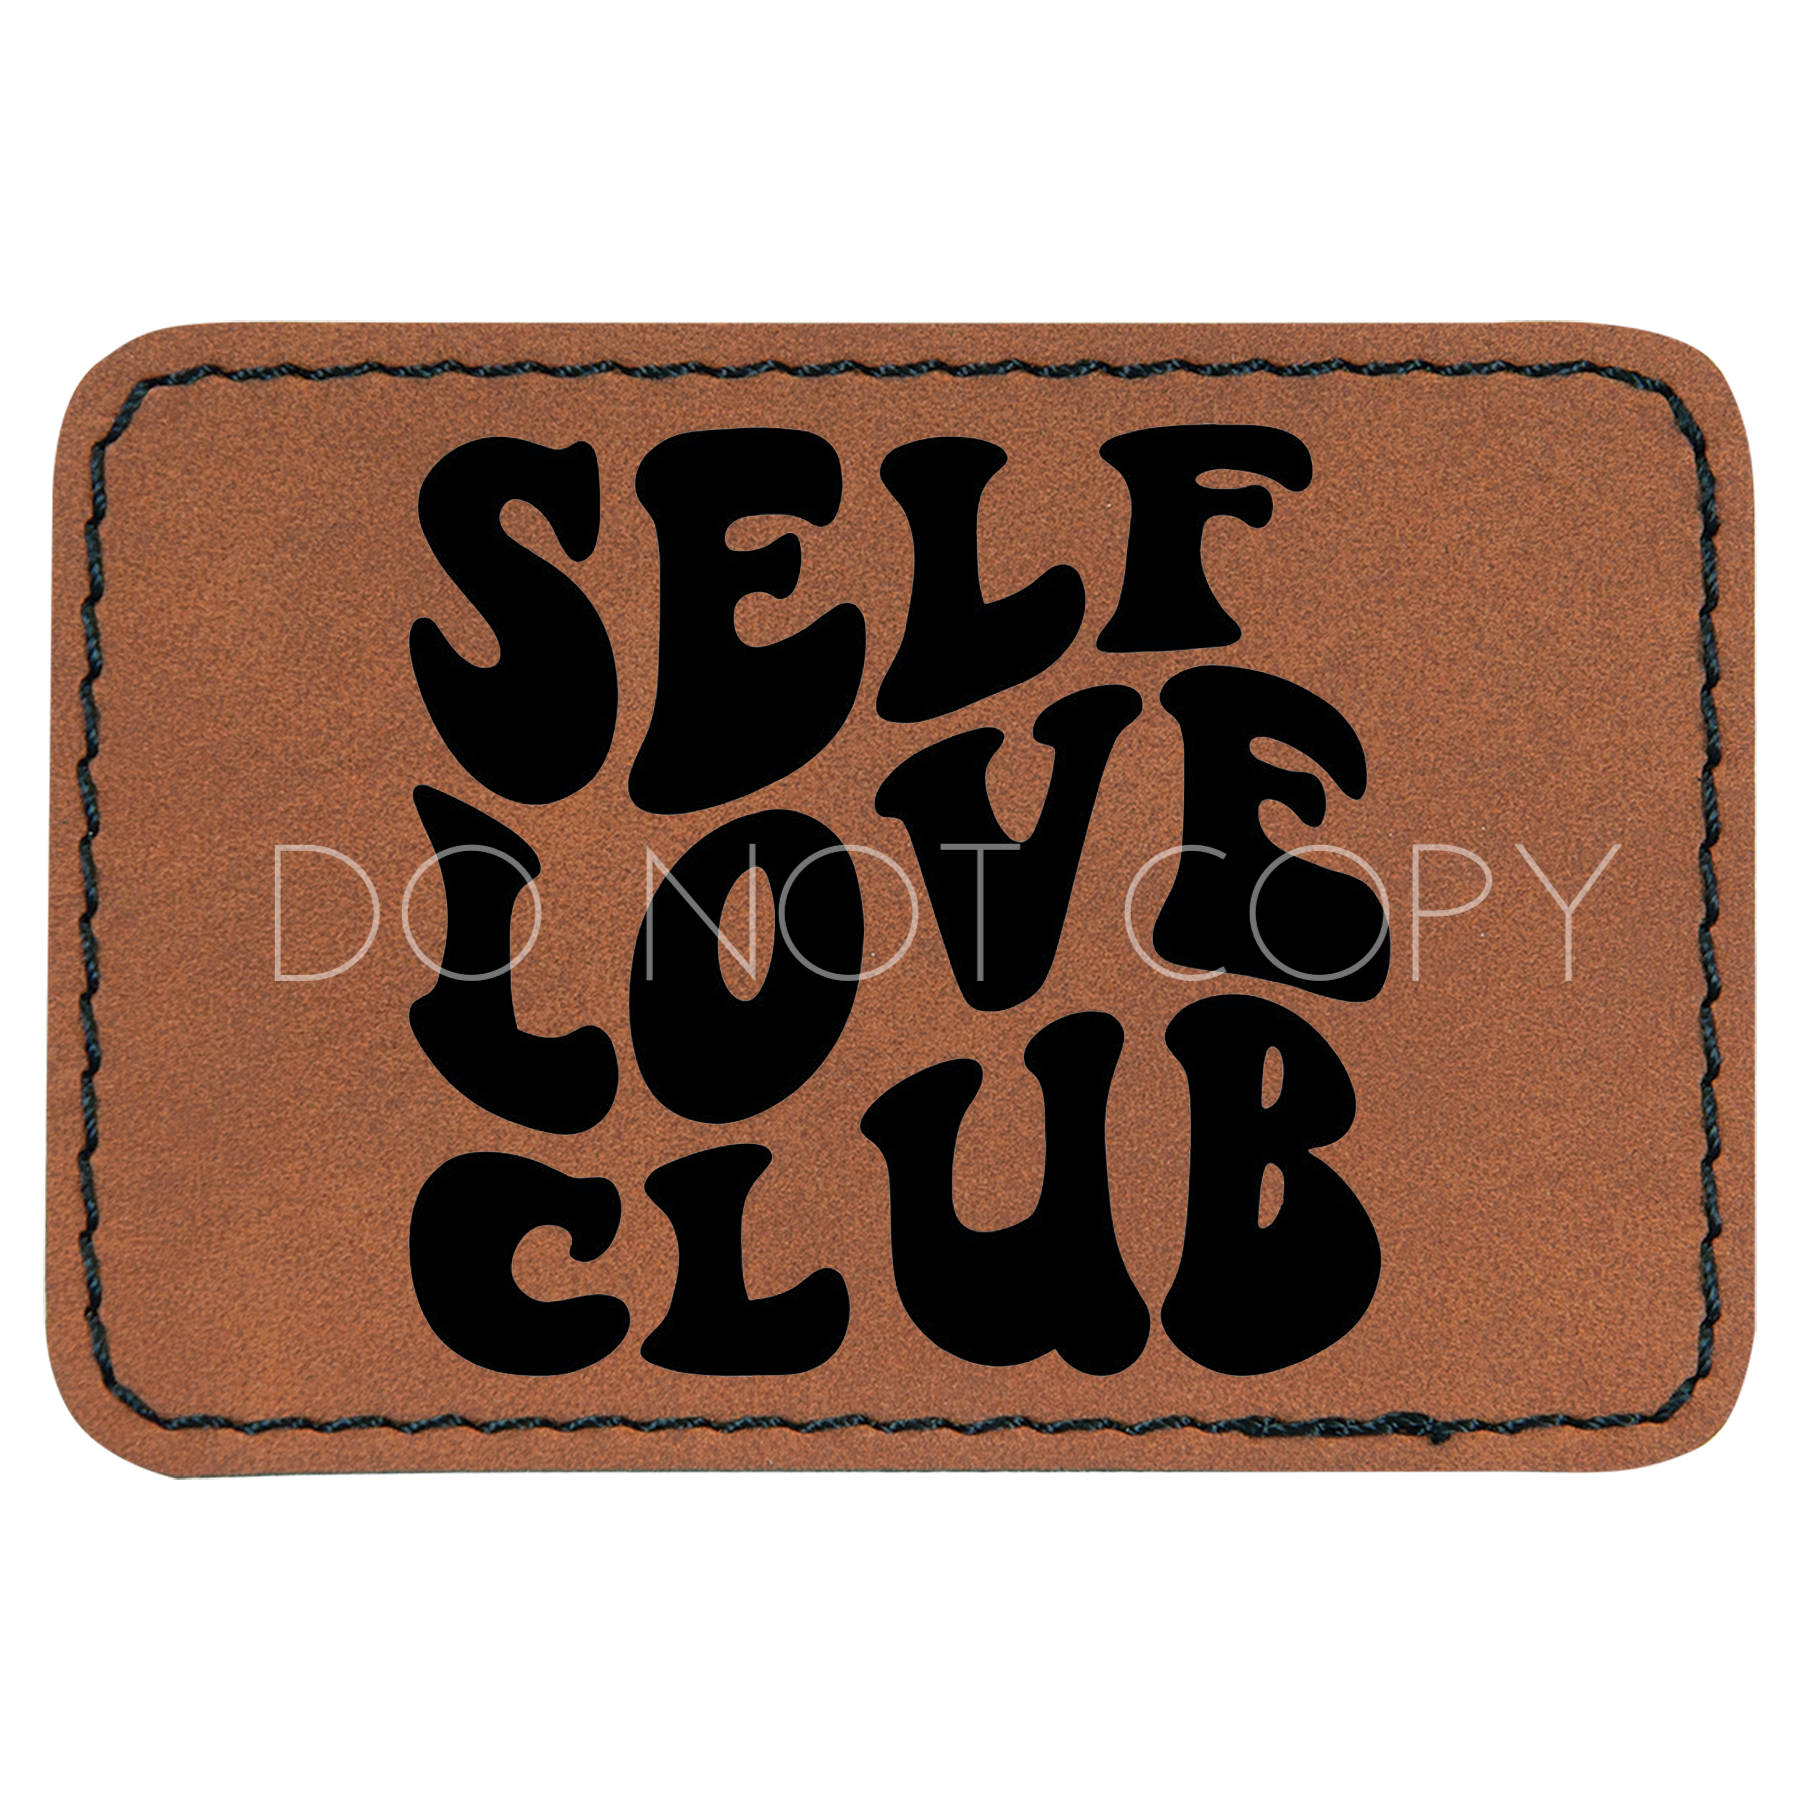 Self Love Club Patch